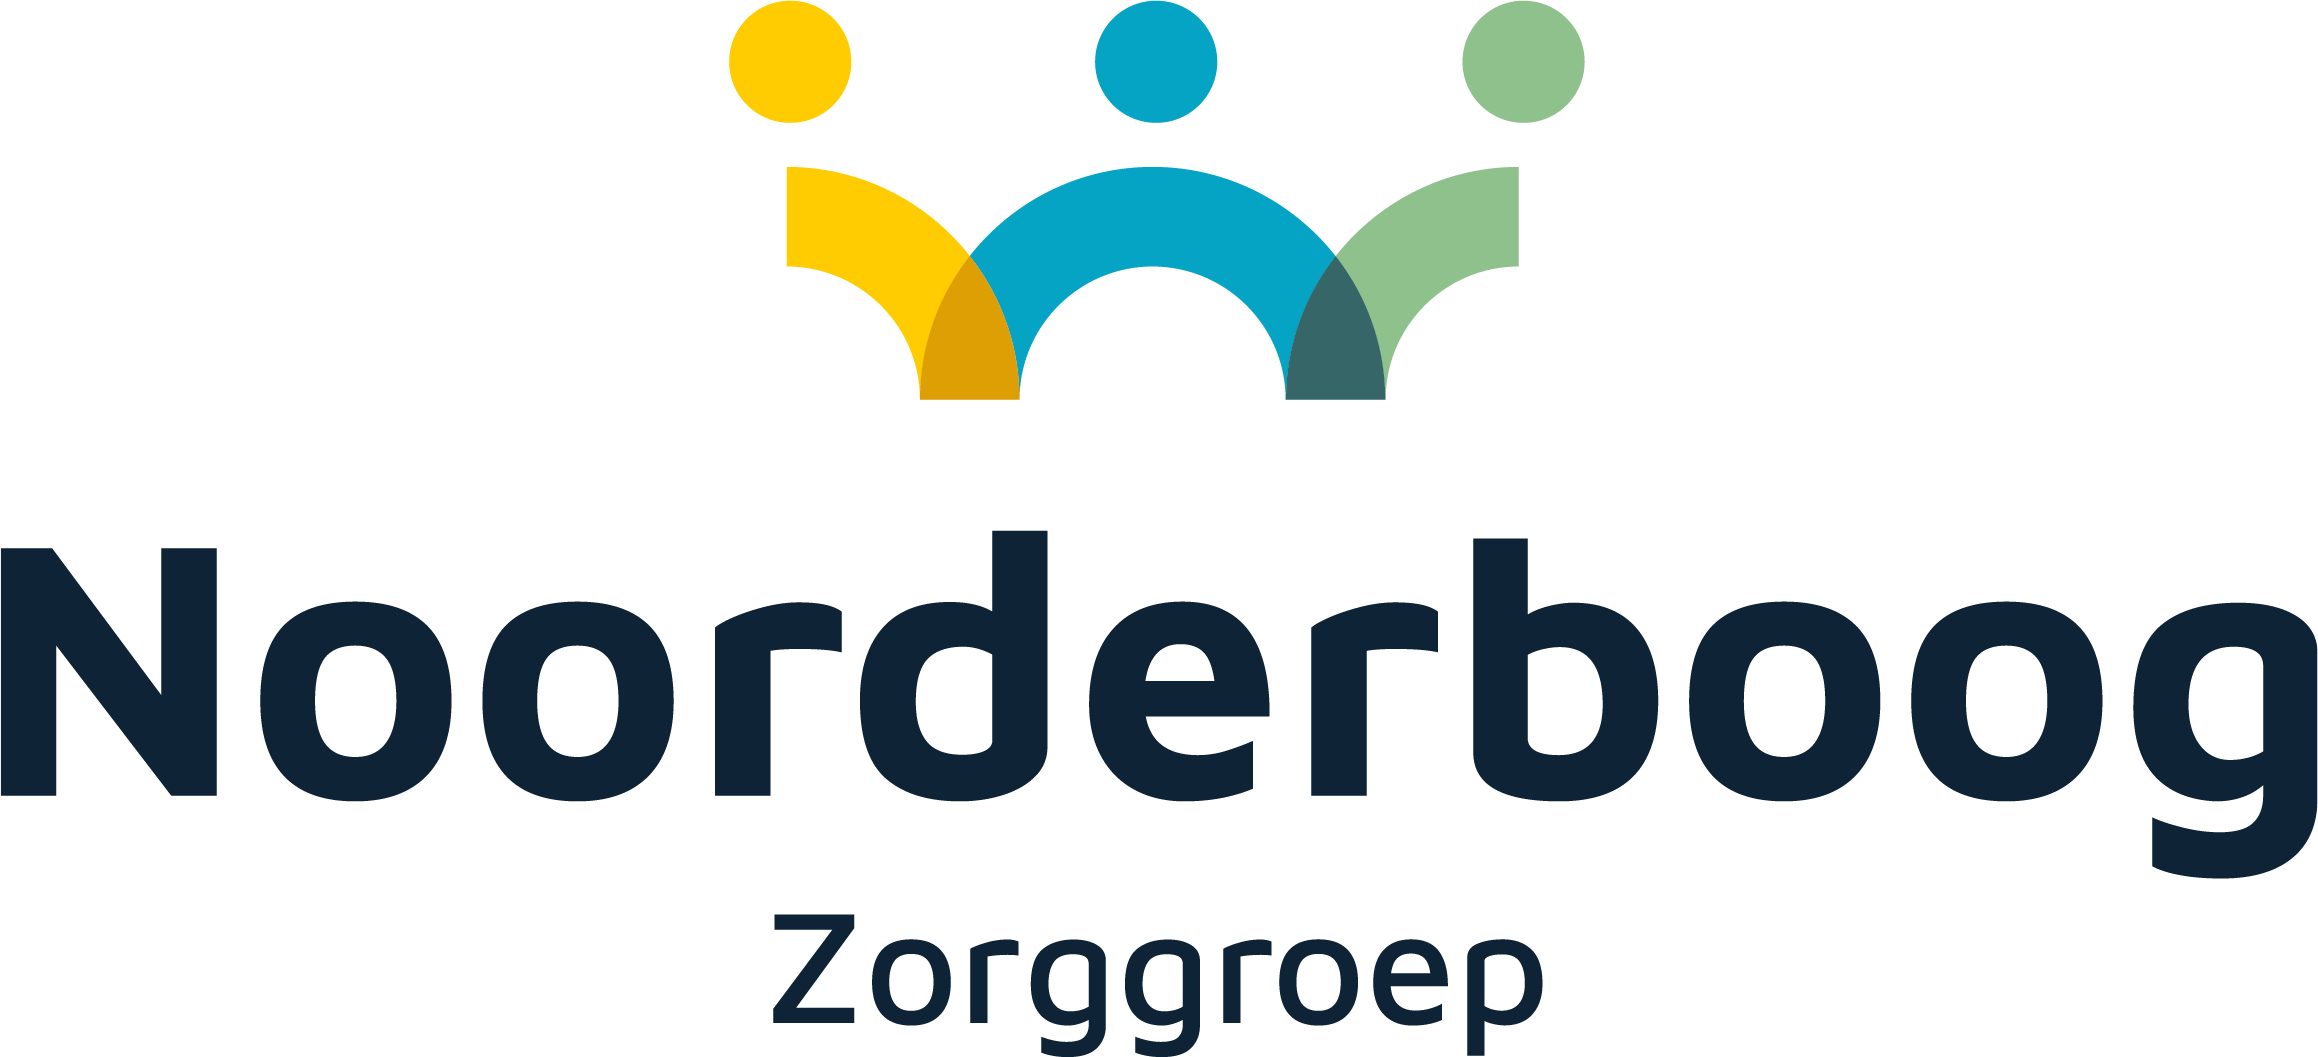 Noorderboog_Zorggroep_logo